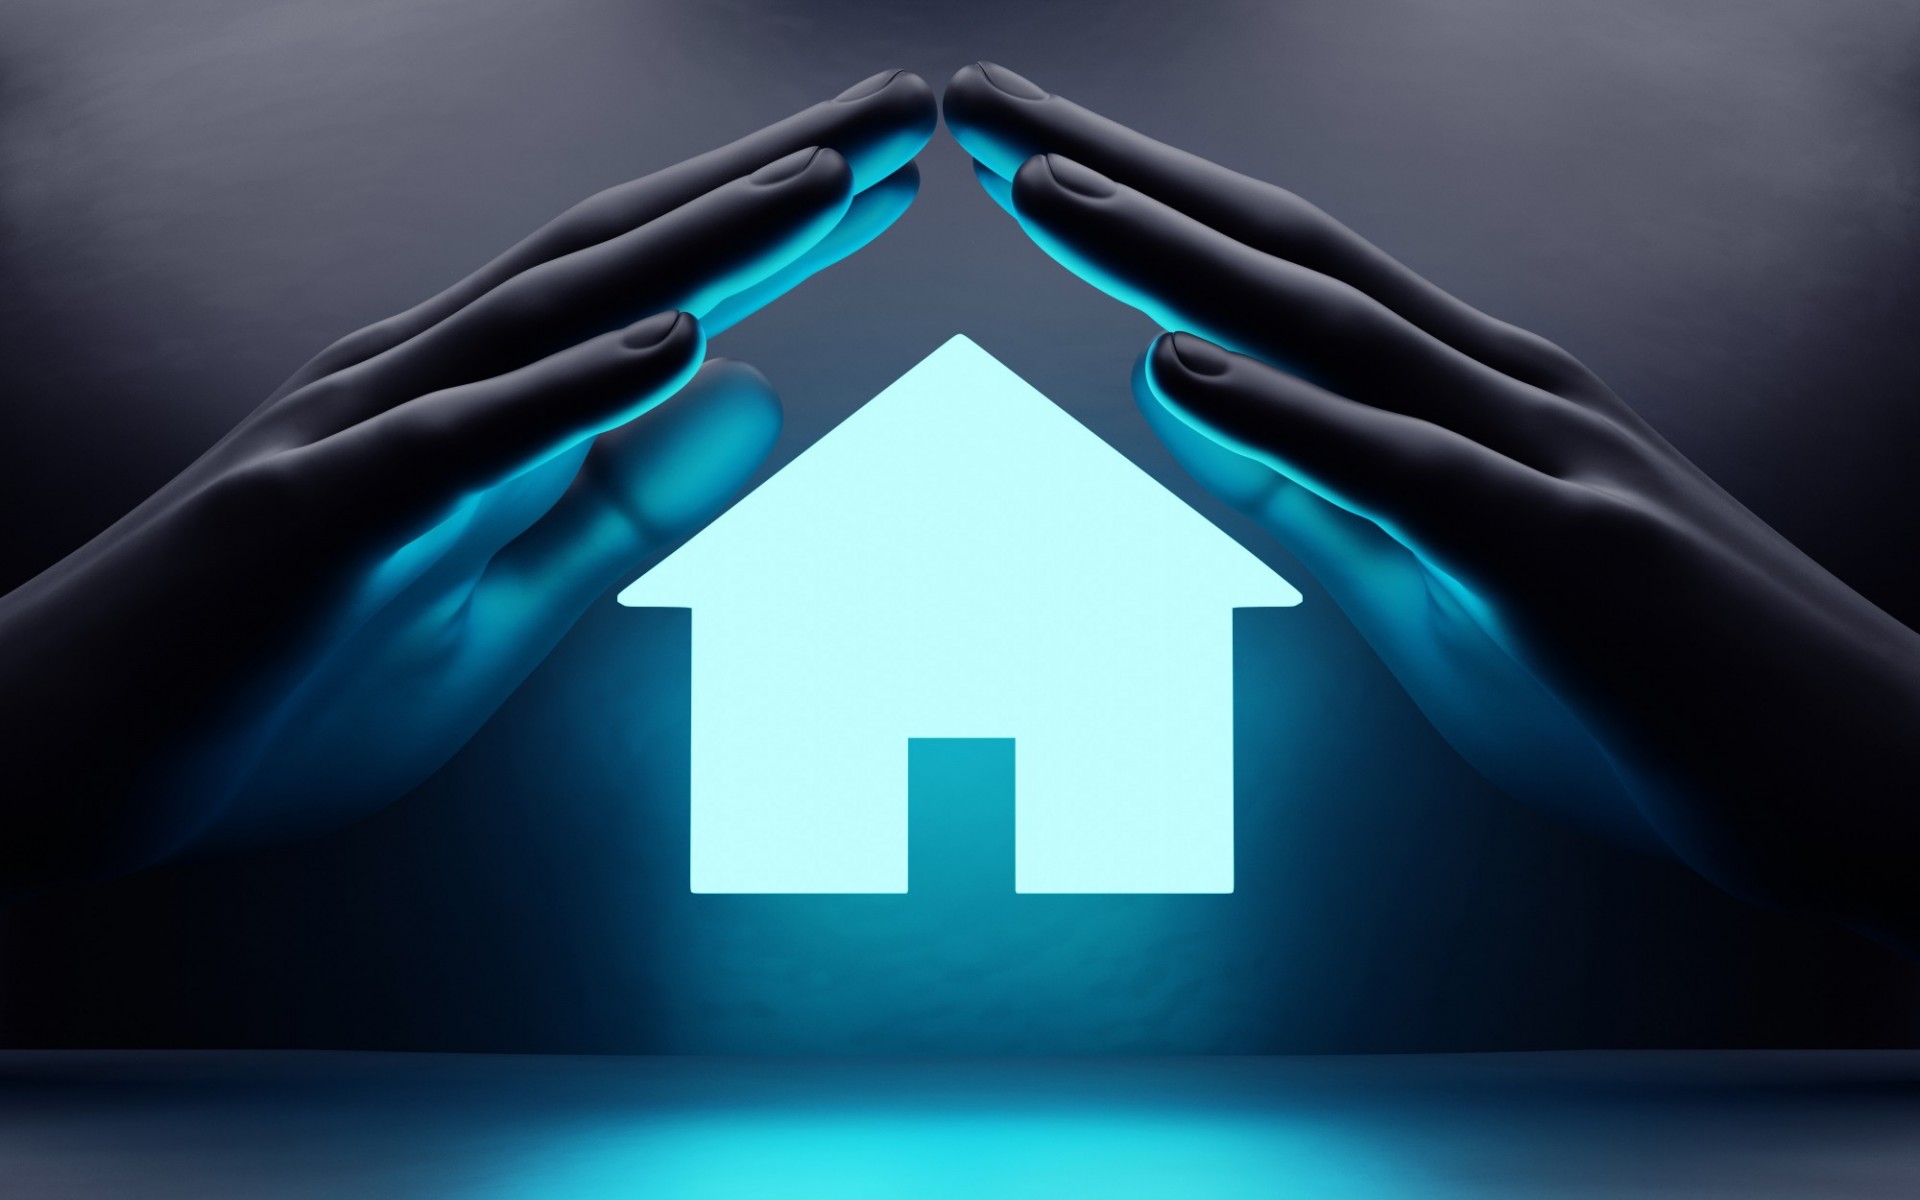 Casa en color azul claro flotando en el aire y reflejando color azul y cubierta por dos mano oscuras